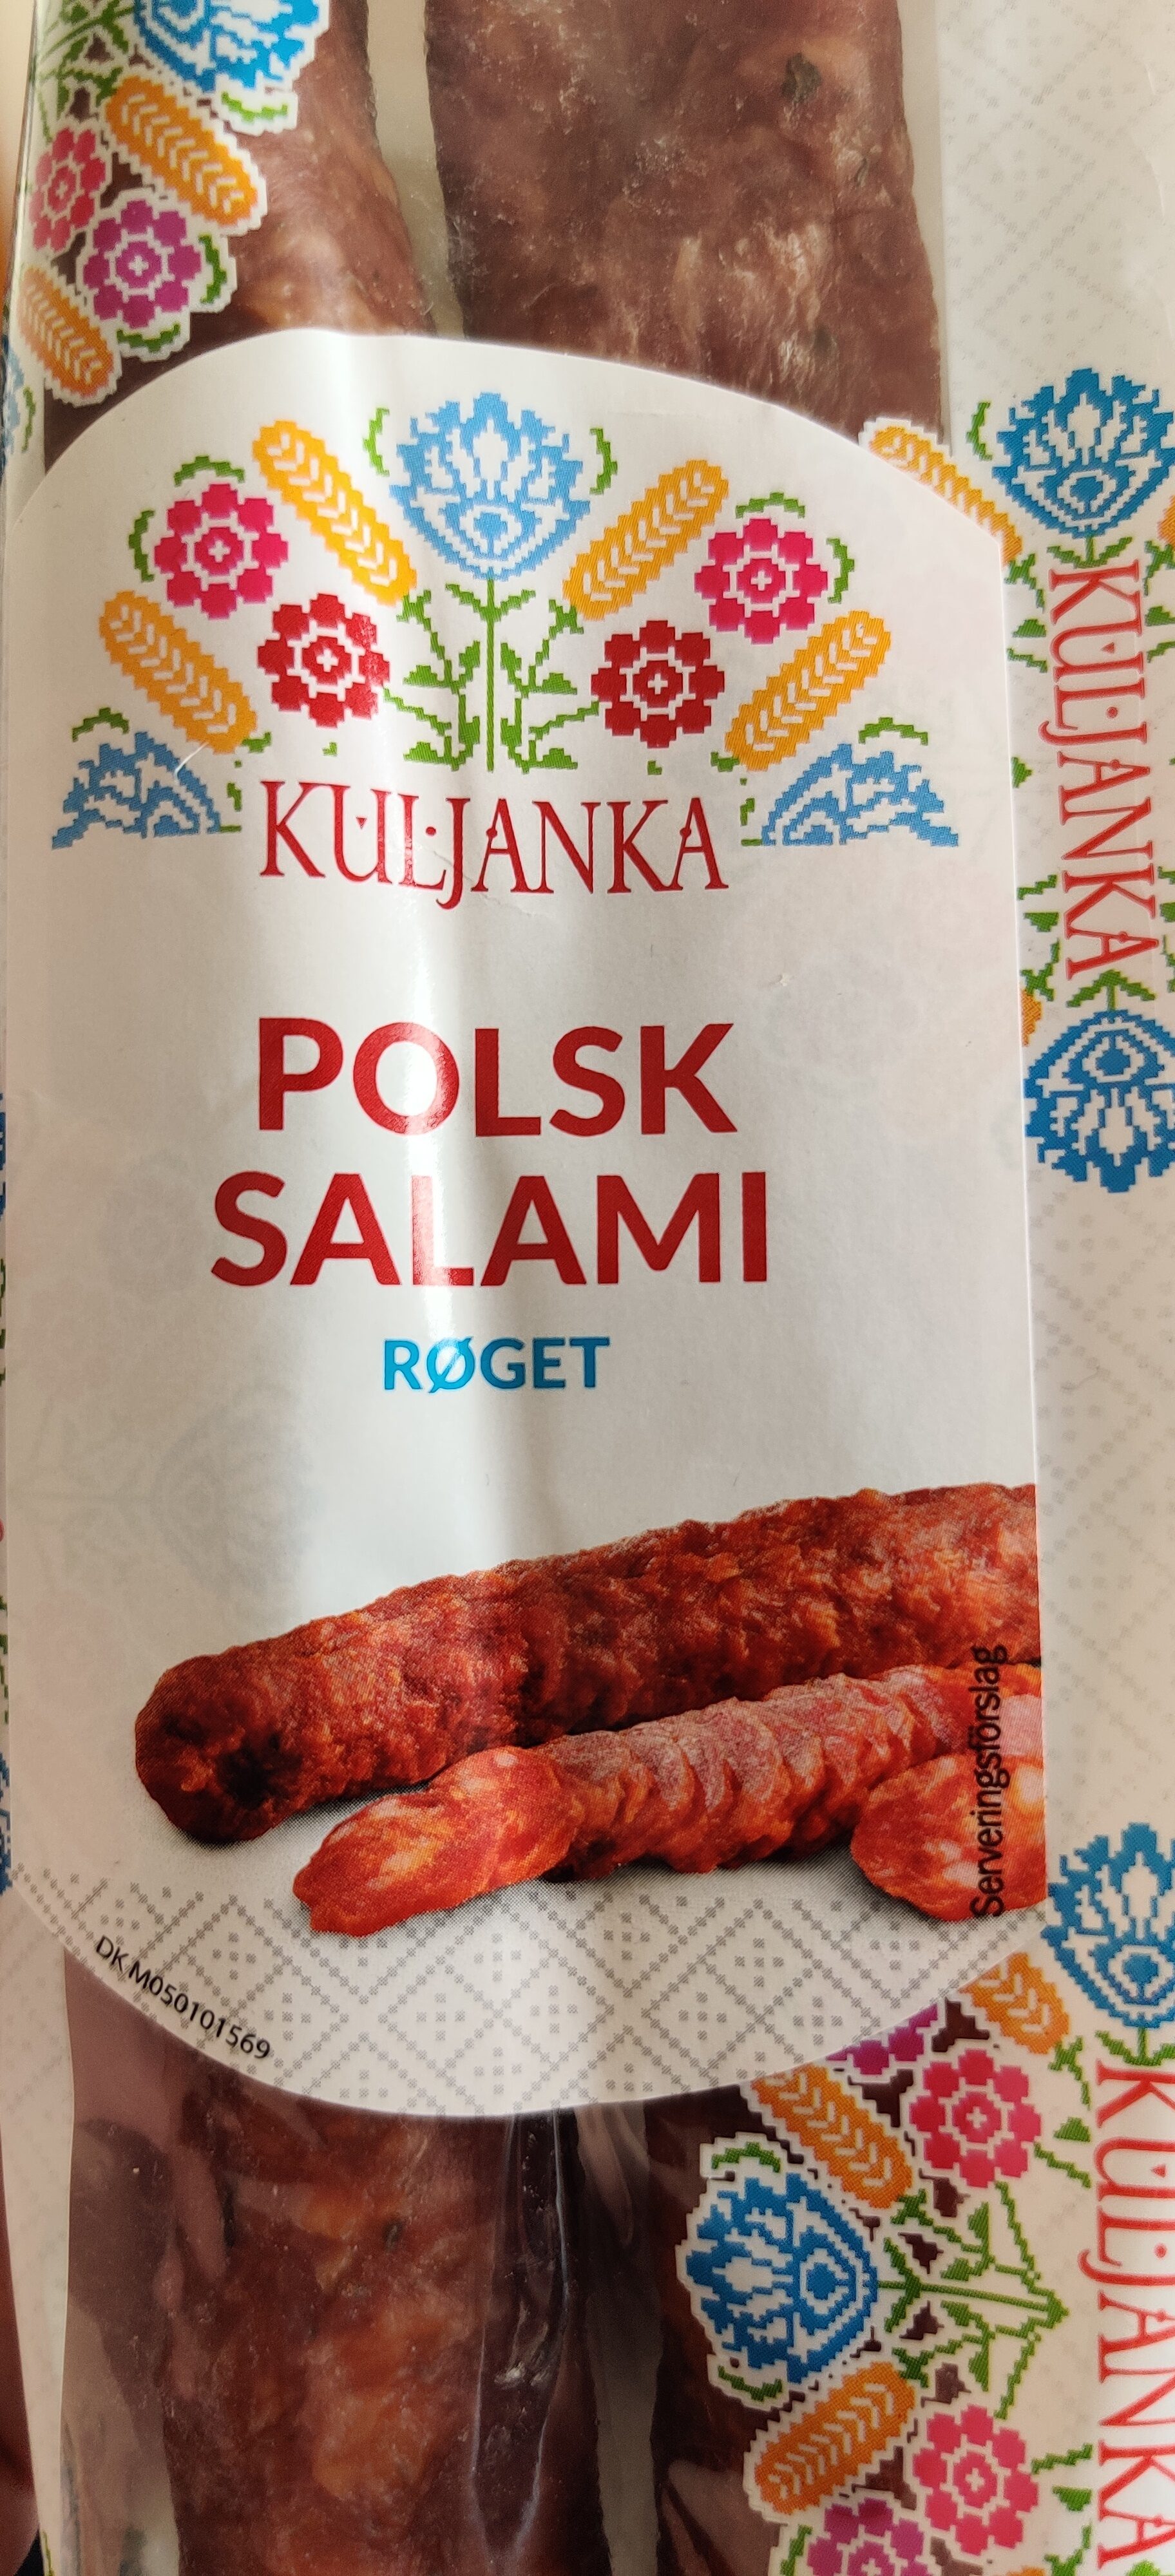 Polsk Salami røget - Produkt - en